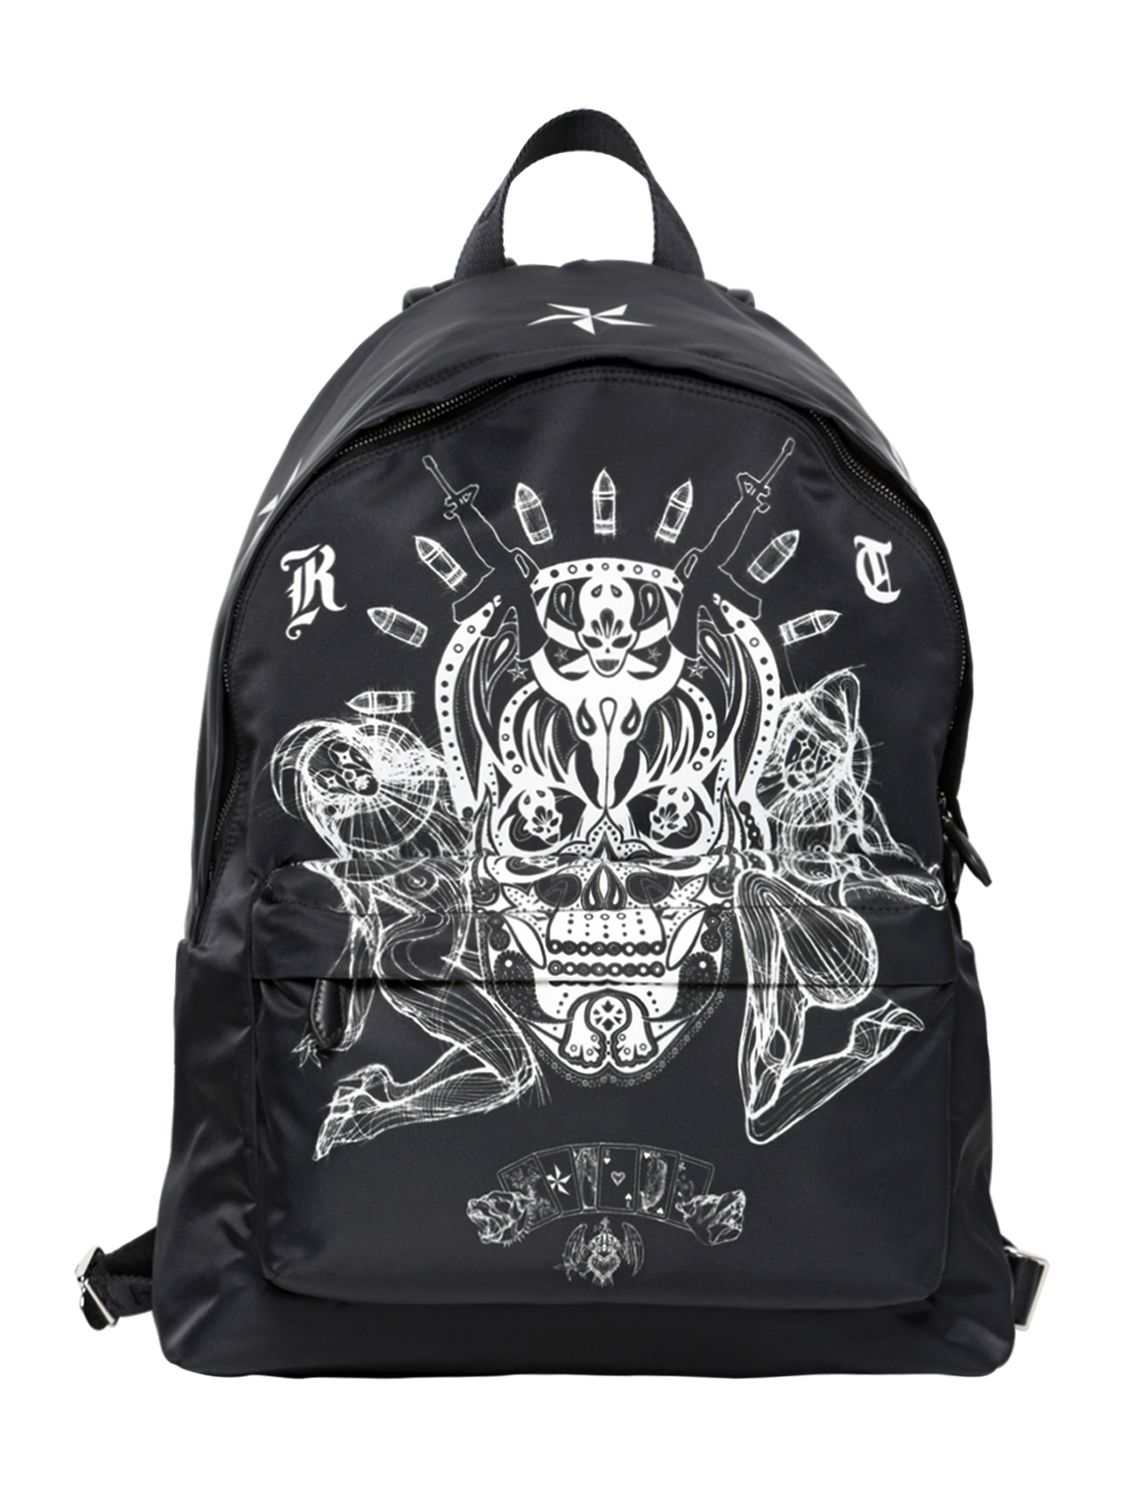 backpack001